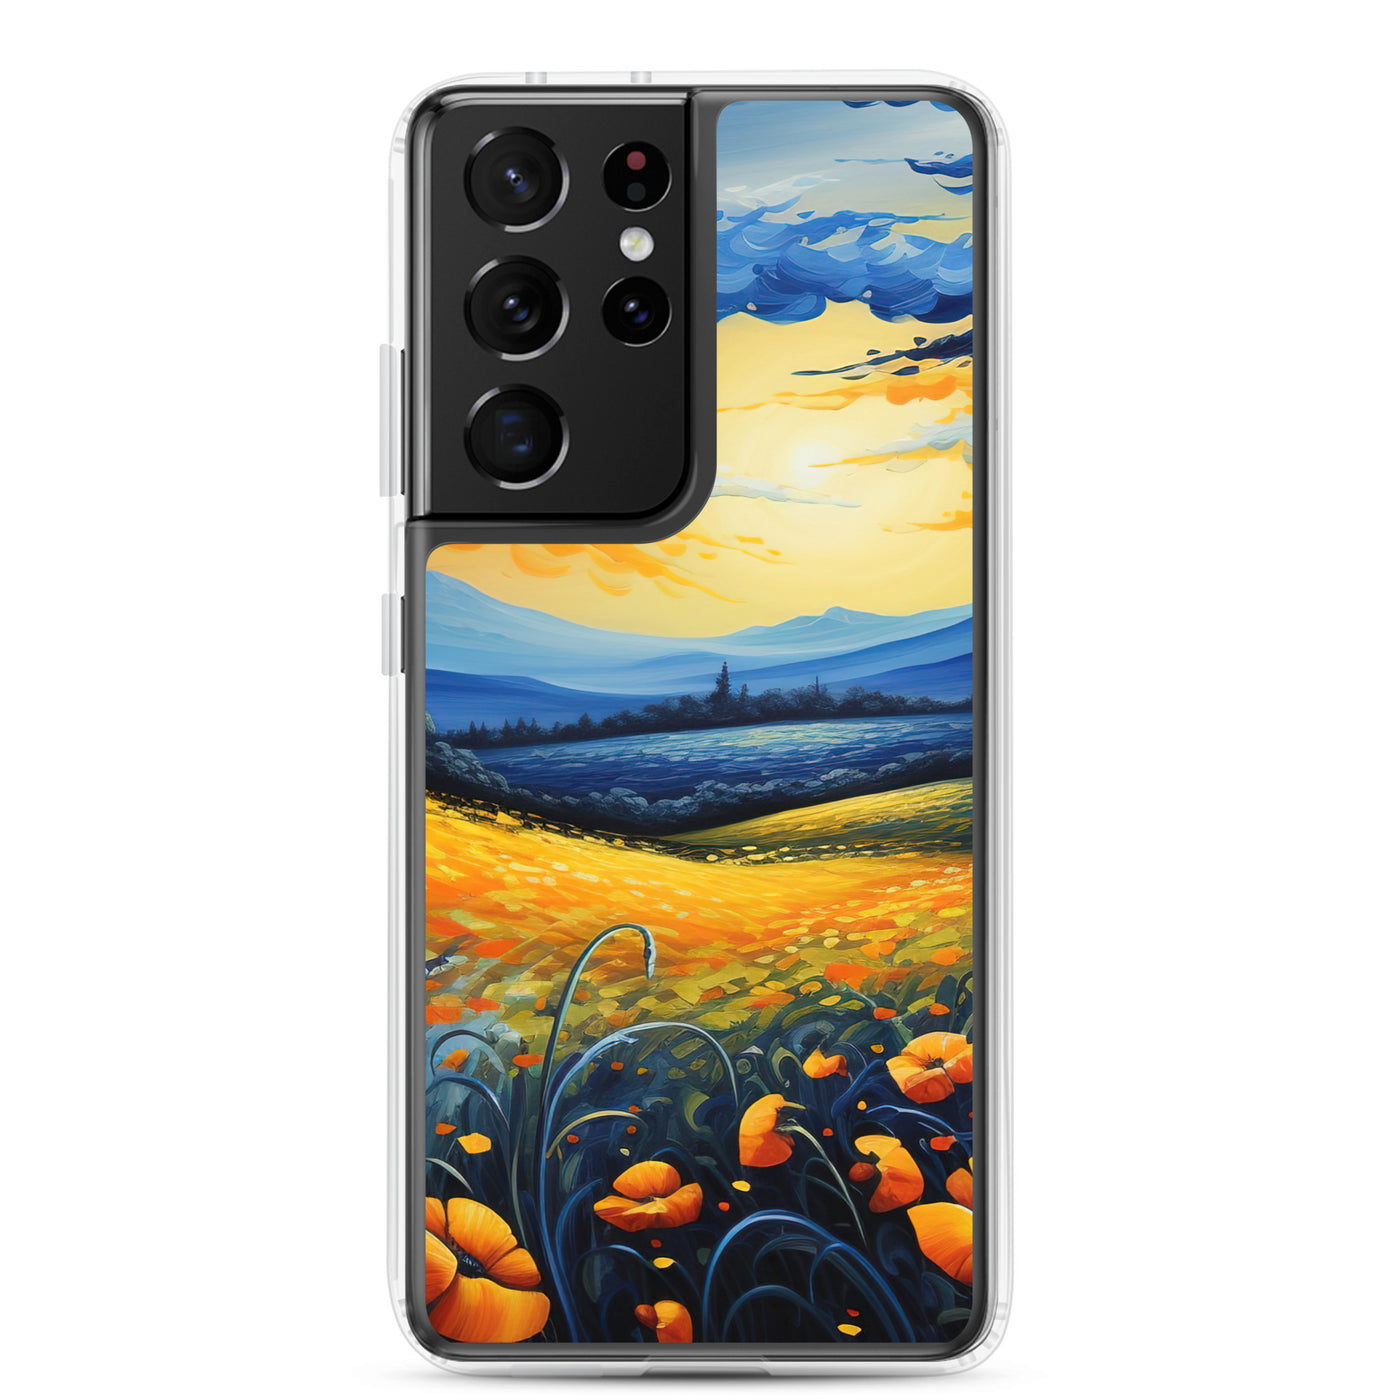 Berglandschaft mit schönen gelben Blumen - Landschaftsmalerei - Samsung Schutzhülle (durchsichtig) berge xxx Samsung Galaxy S21 Ultra